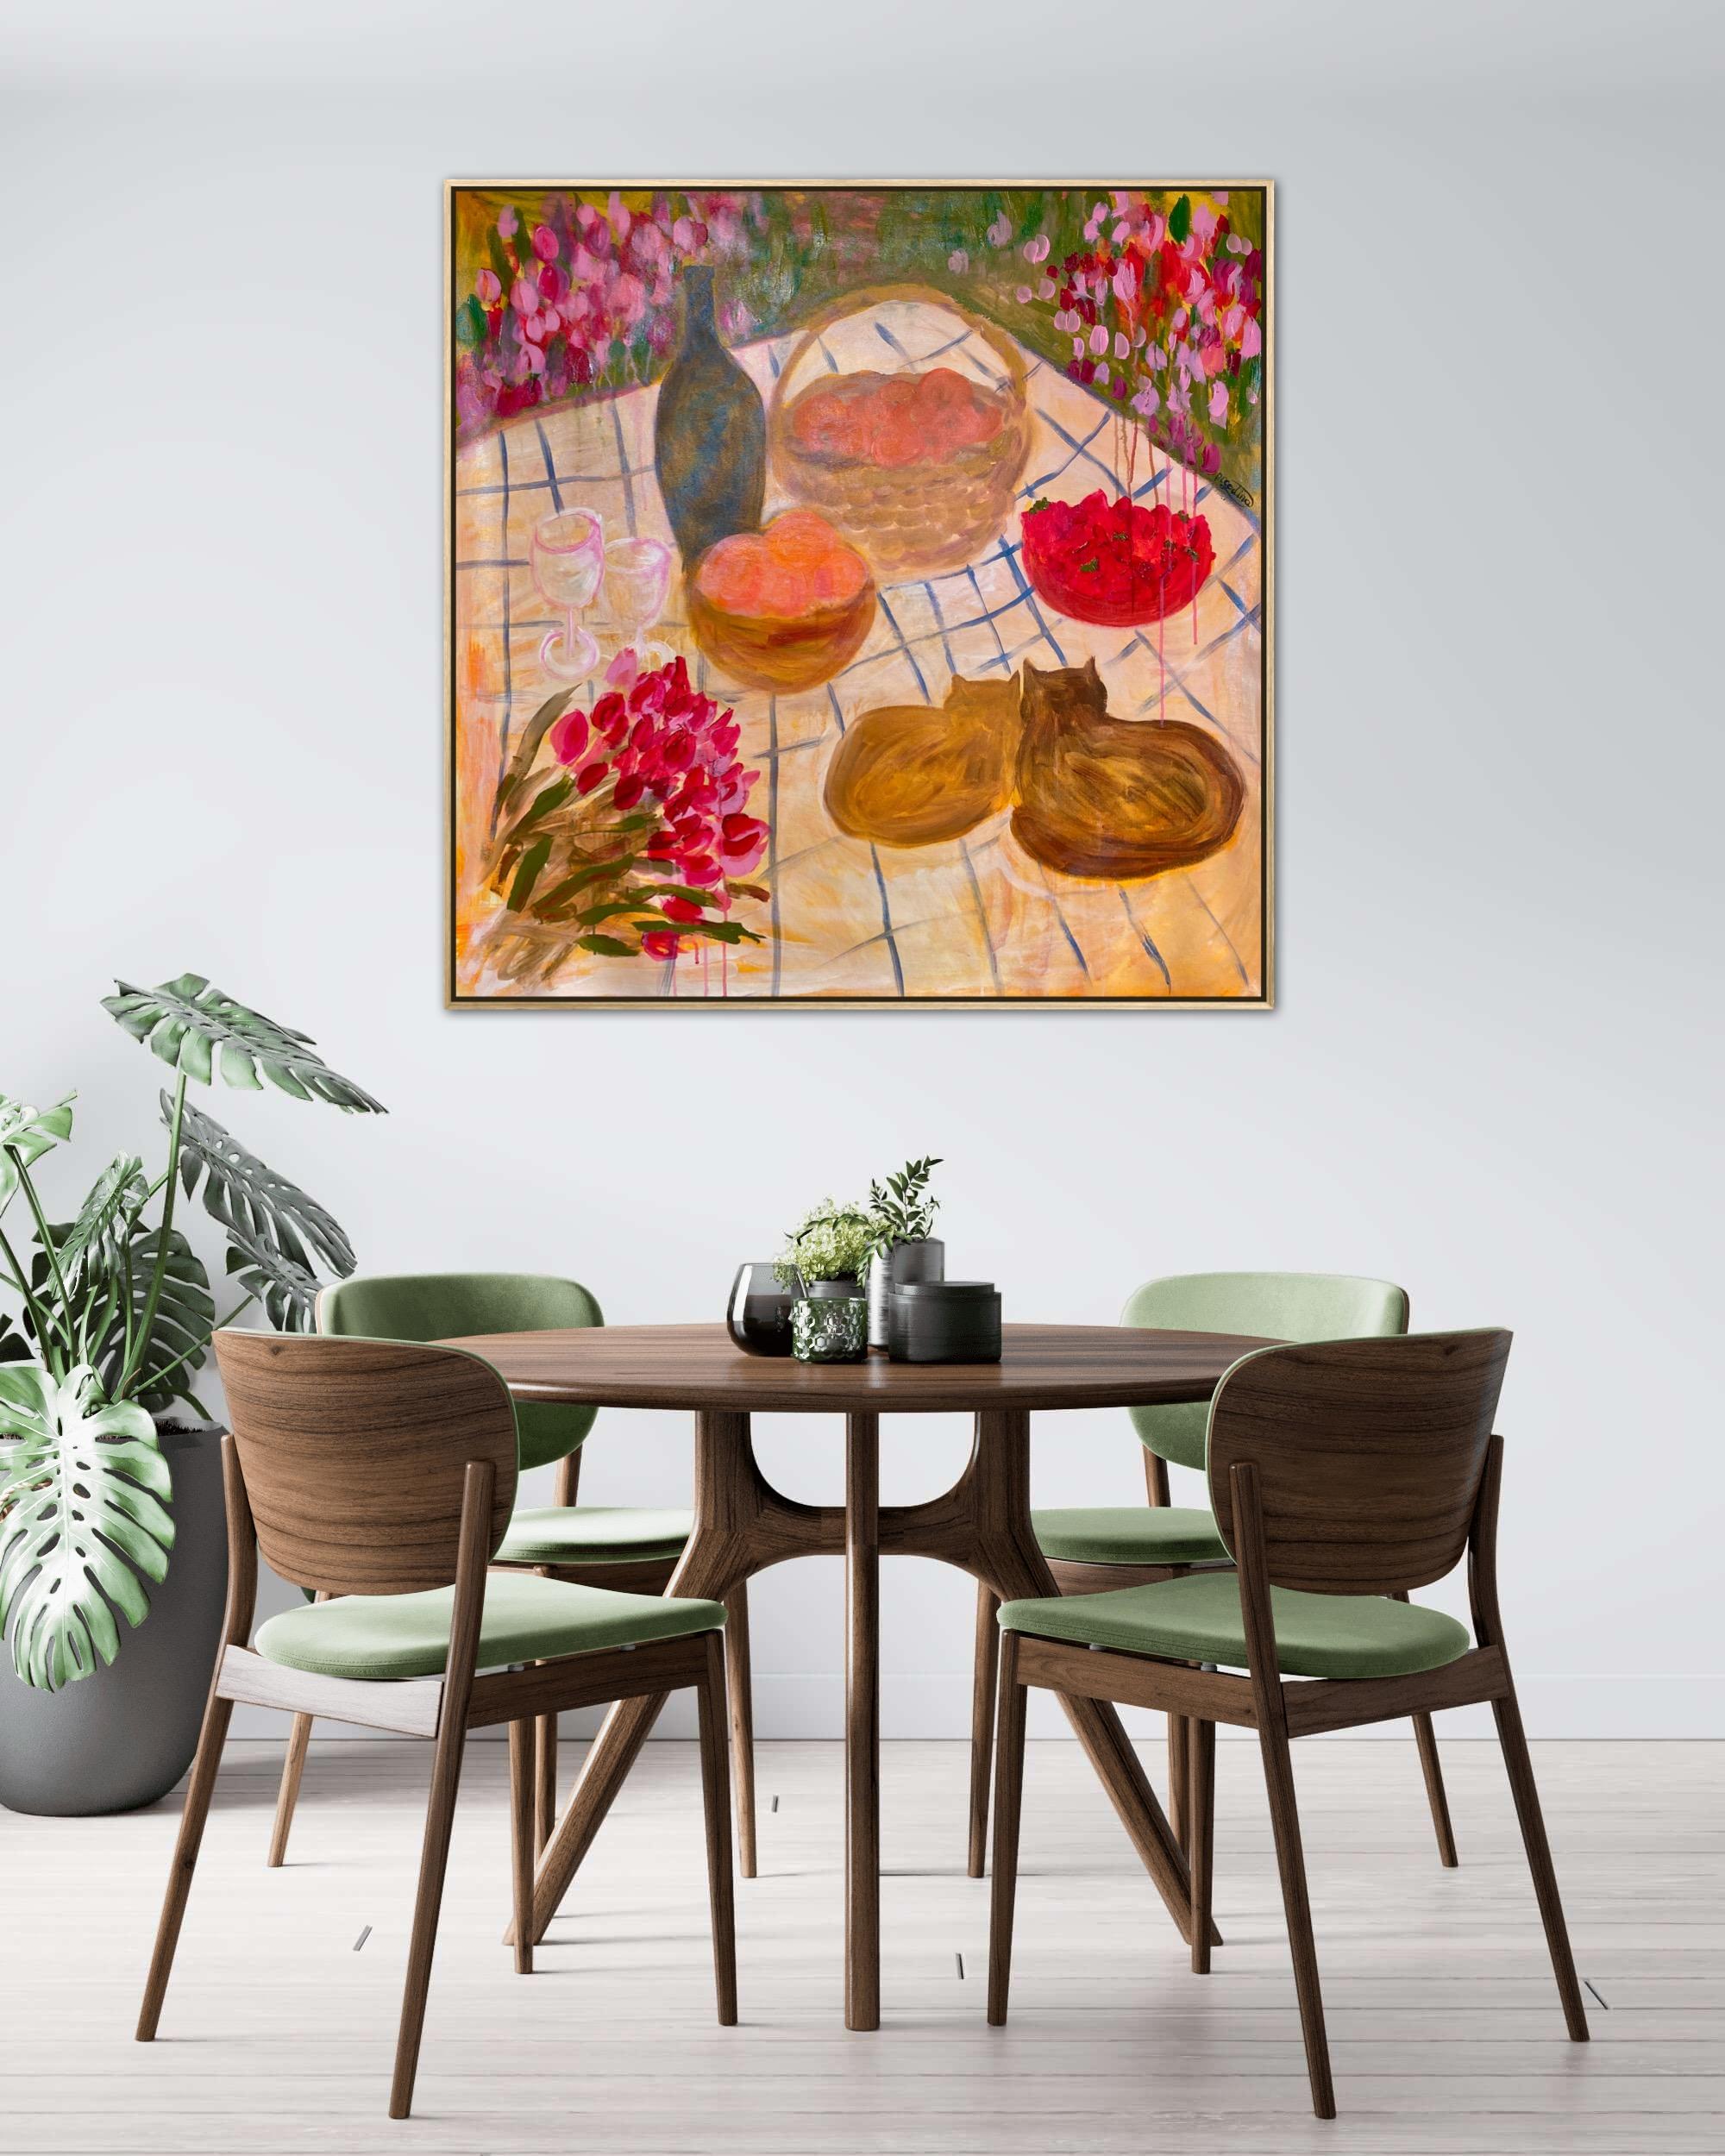 Let’s eat, honey - Impressionist Painting by Dasha Pogodina